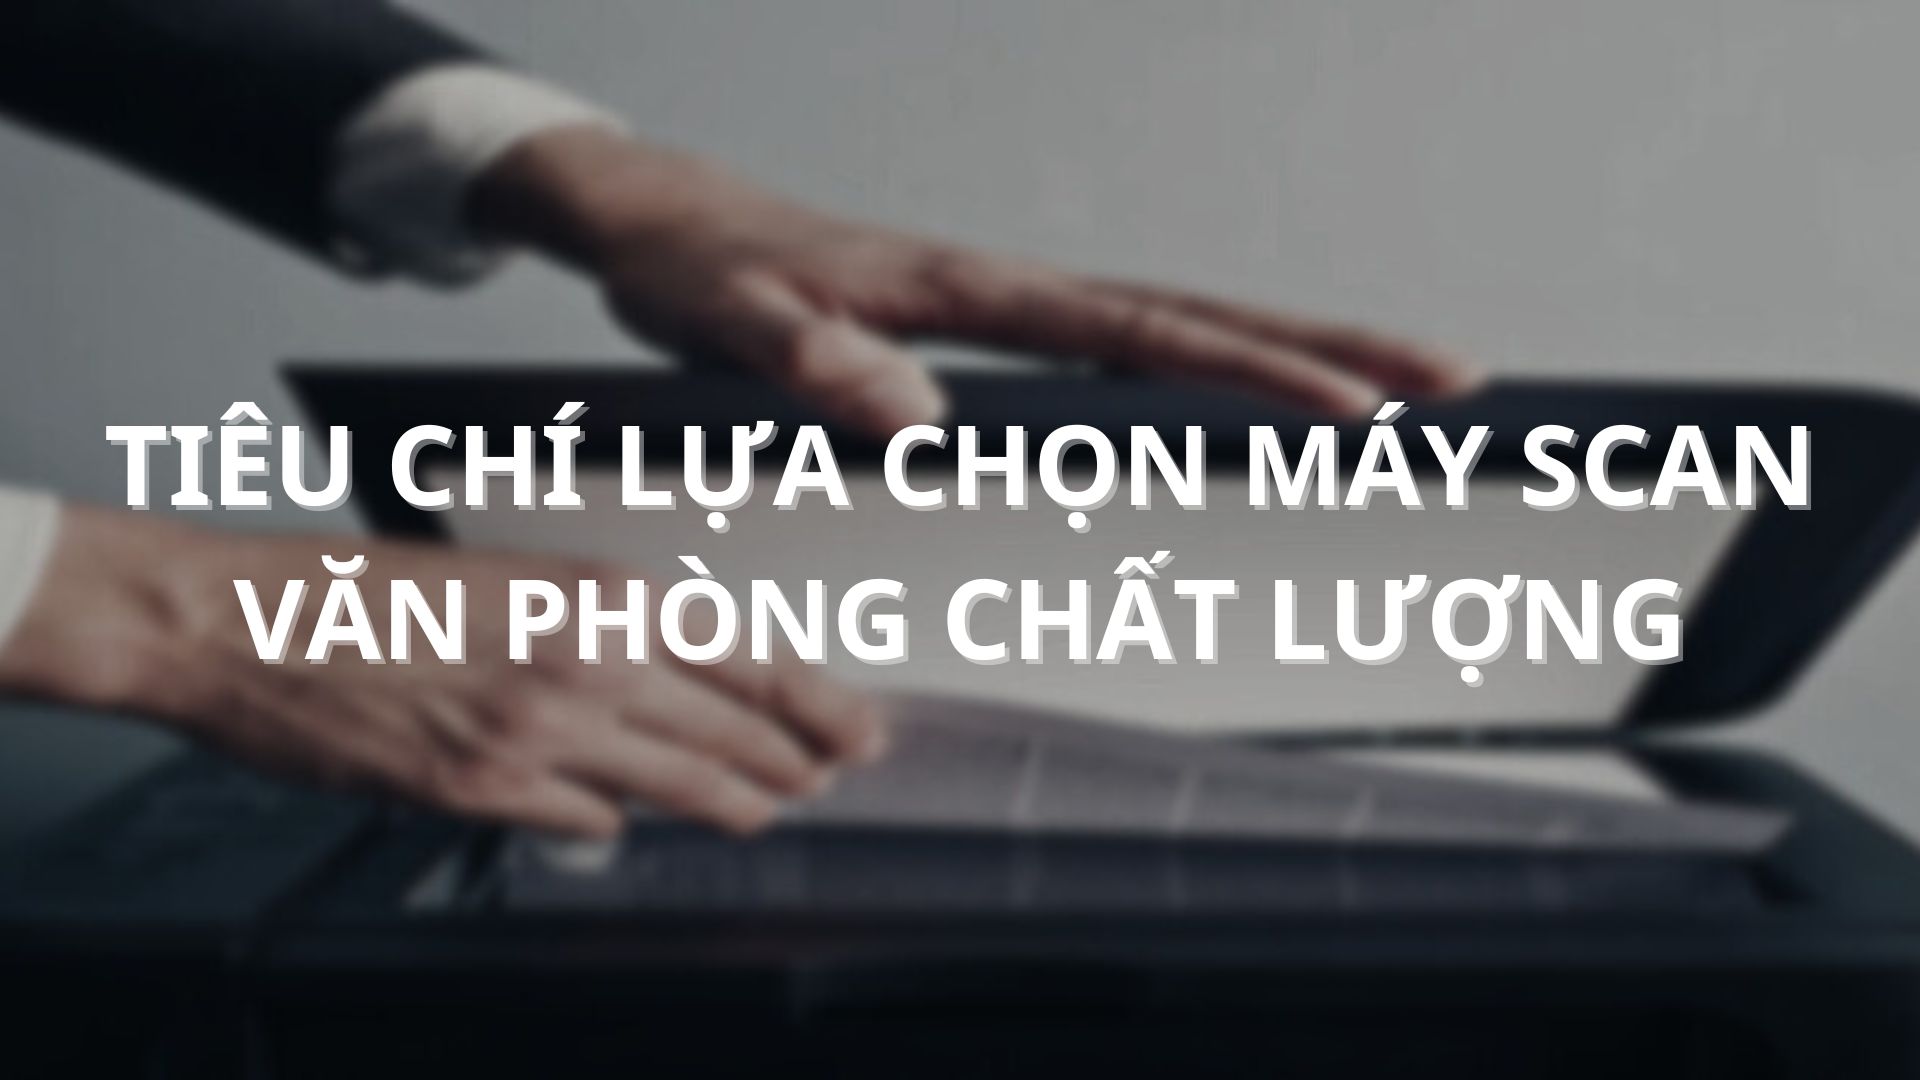 tieu-chi-lua-chon-may-scan-van-phong-chat-luong-01